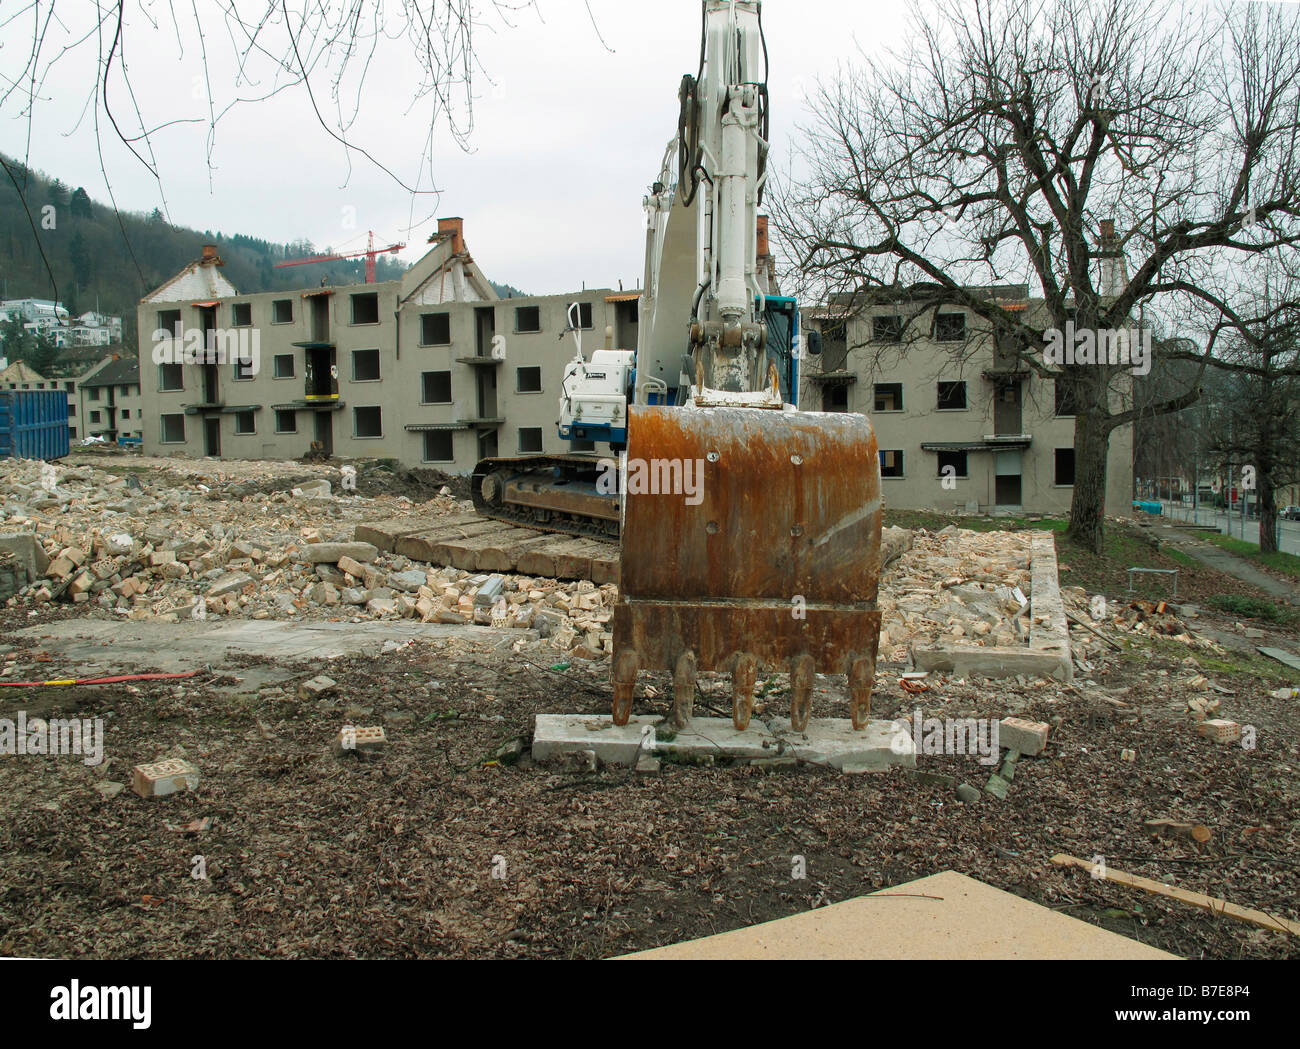 demolition of old apartment blocks city of zurich canton of zurich switzerland Stock Photo